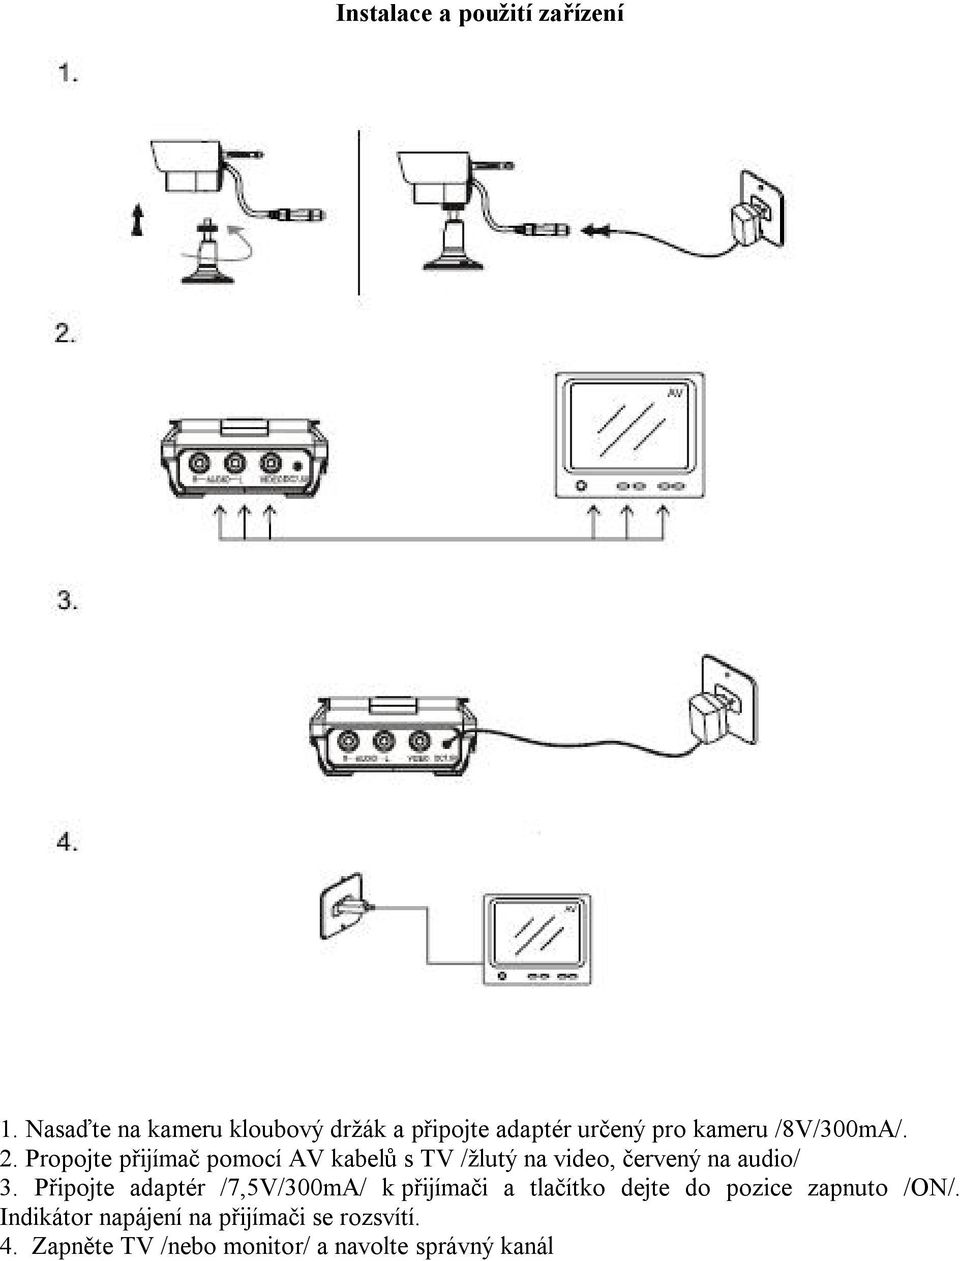 Propojte přijímač pomocí AV kabelů s TV /žlutý na video, červený na audio/ 3.